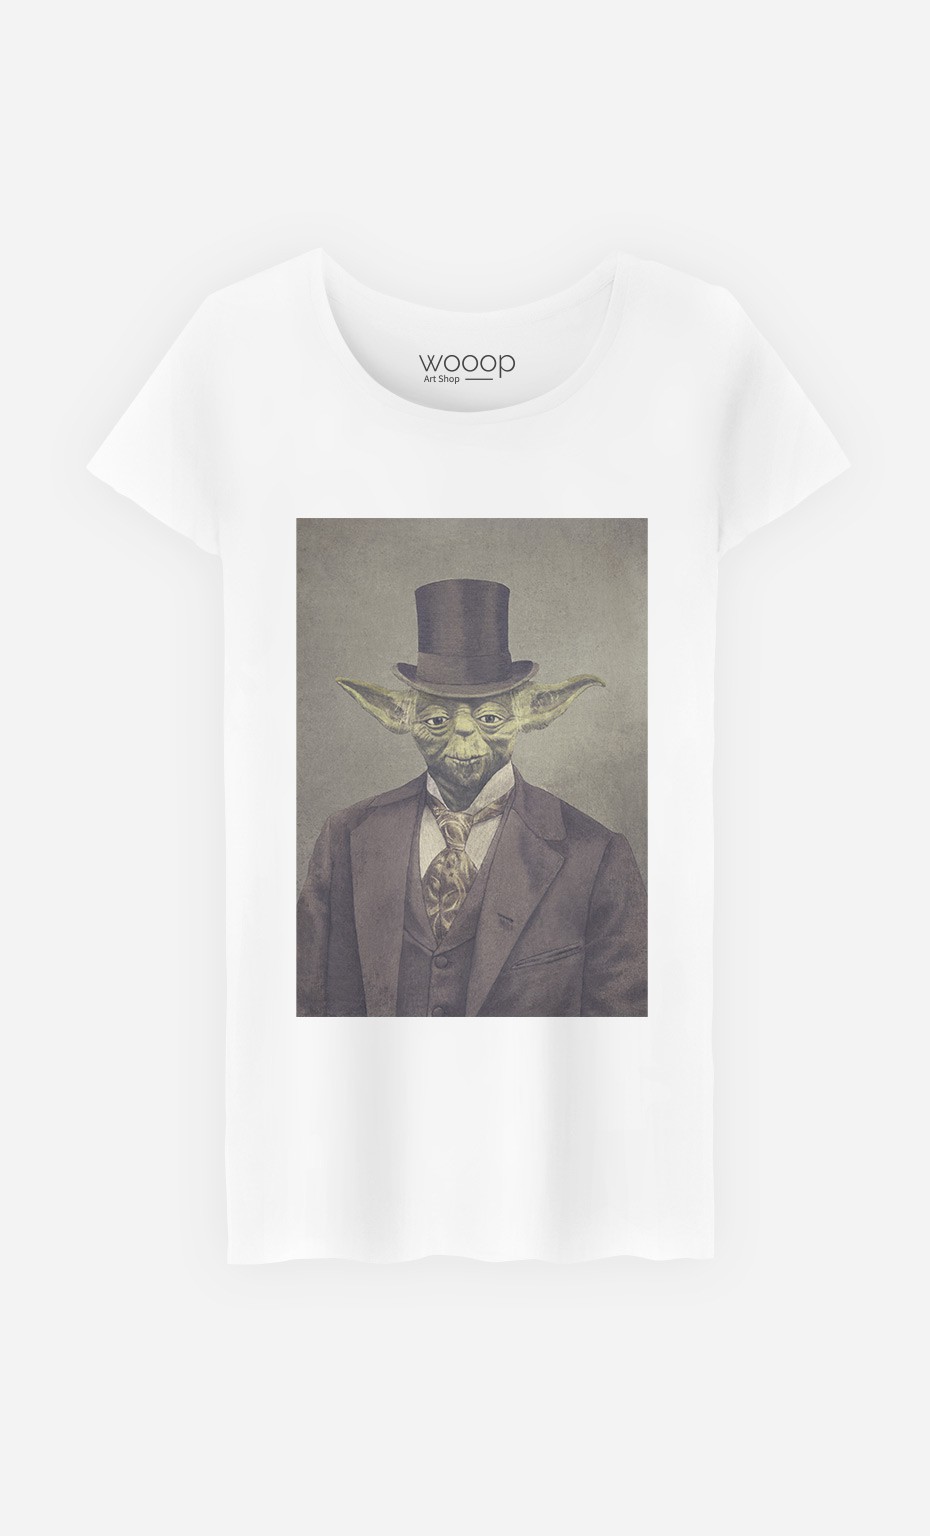 T-Shirt Sir Yoda